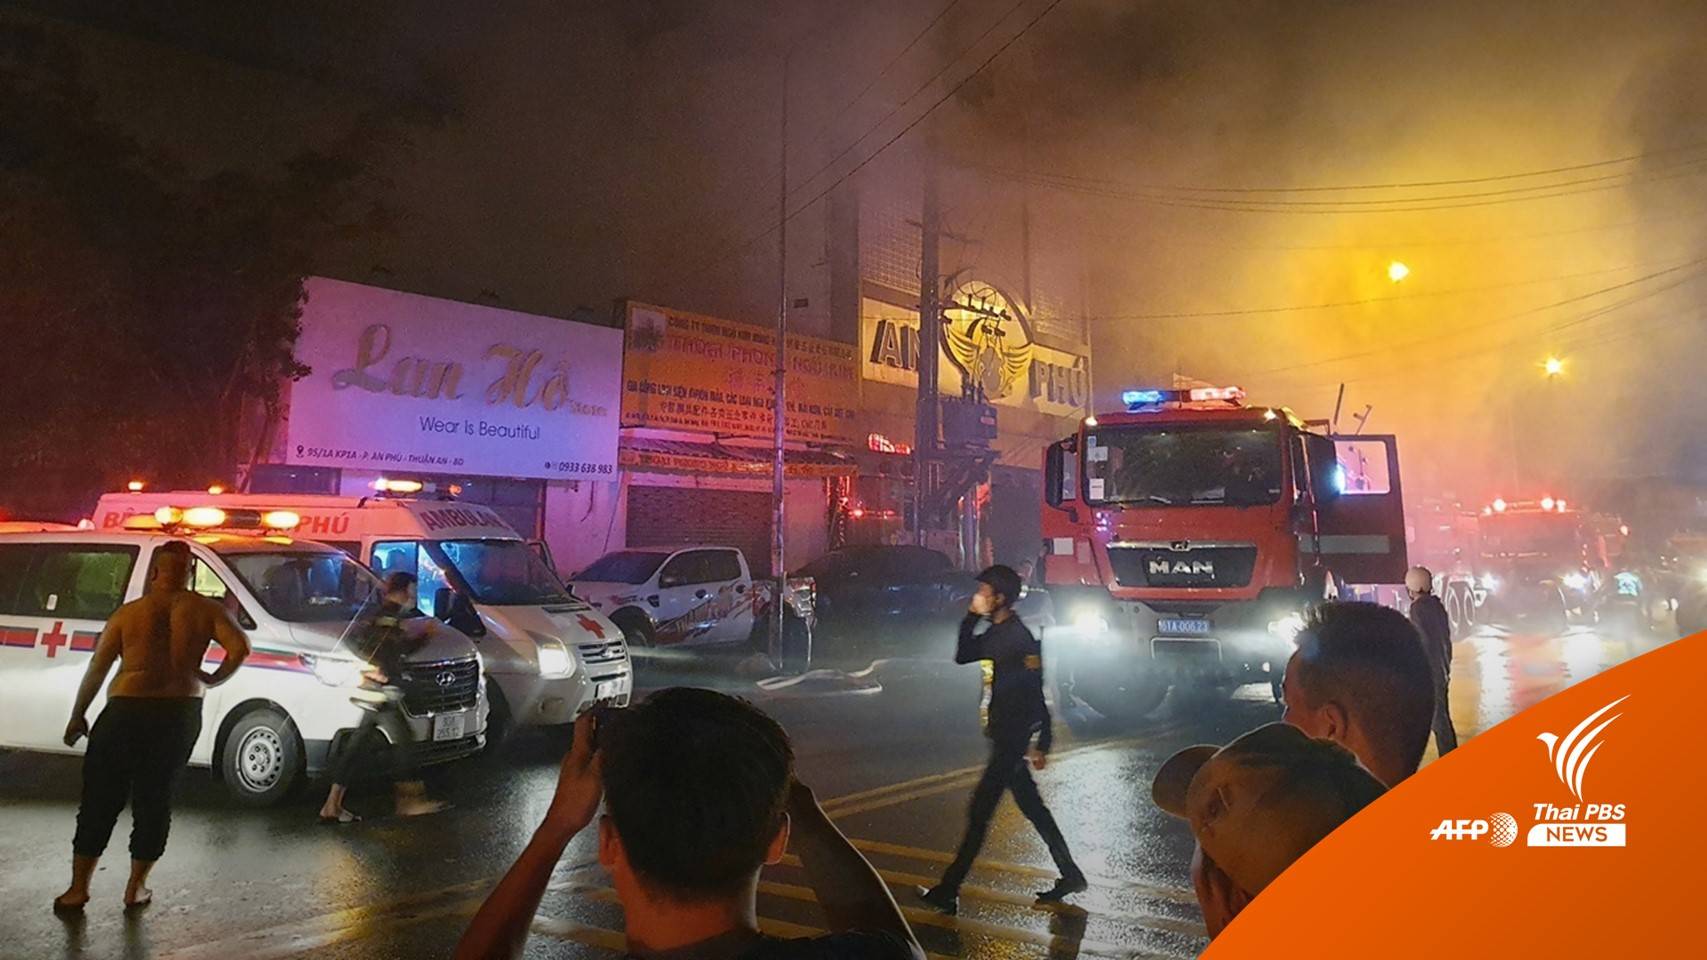 ไฟไหม้ร้านคาราโอเกะเวียดนาม เสียชีวิต 32 เจ็บมากกว่า 40 คน